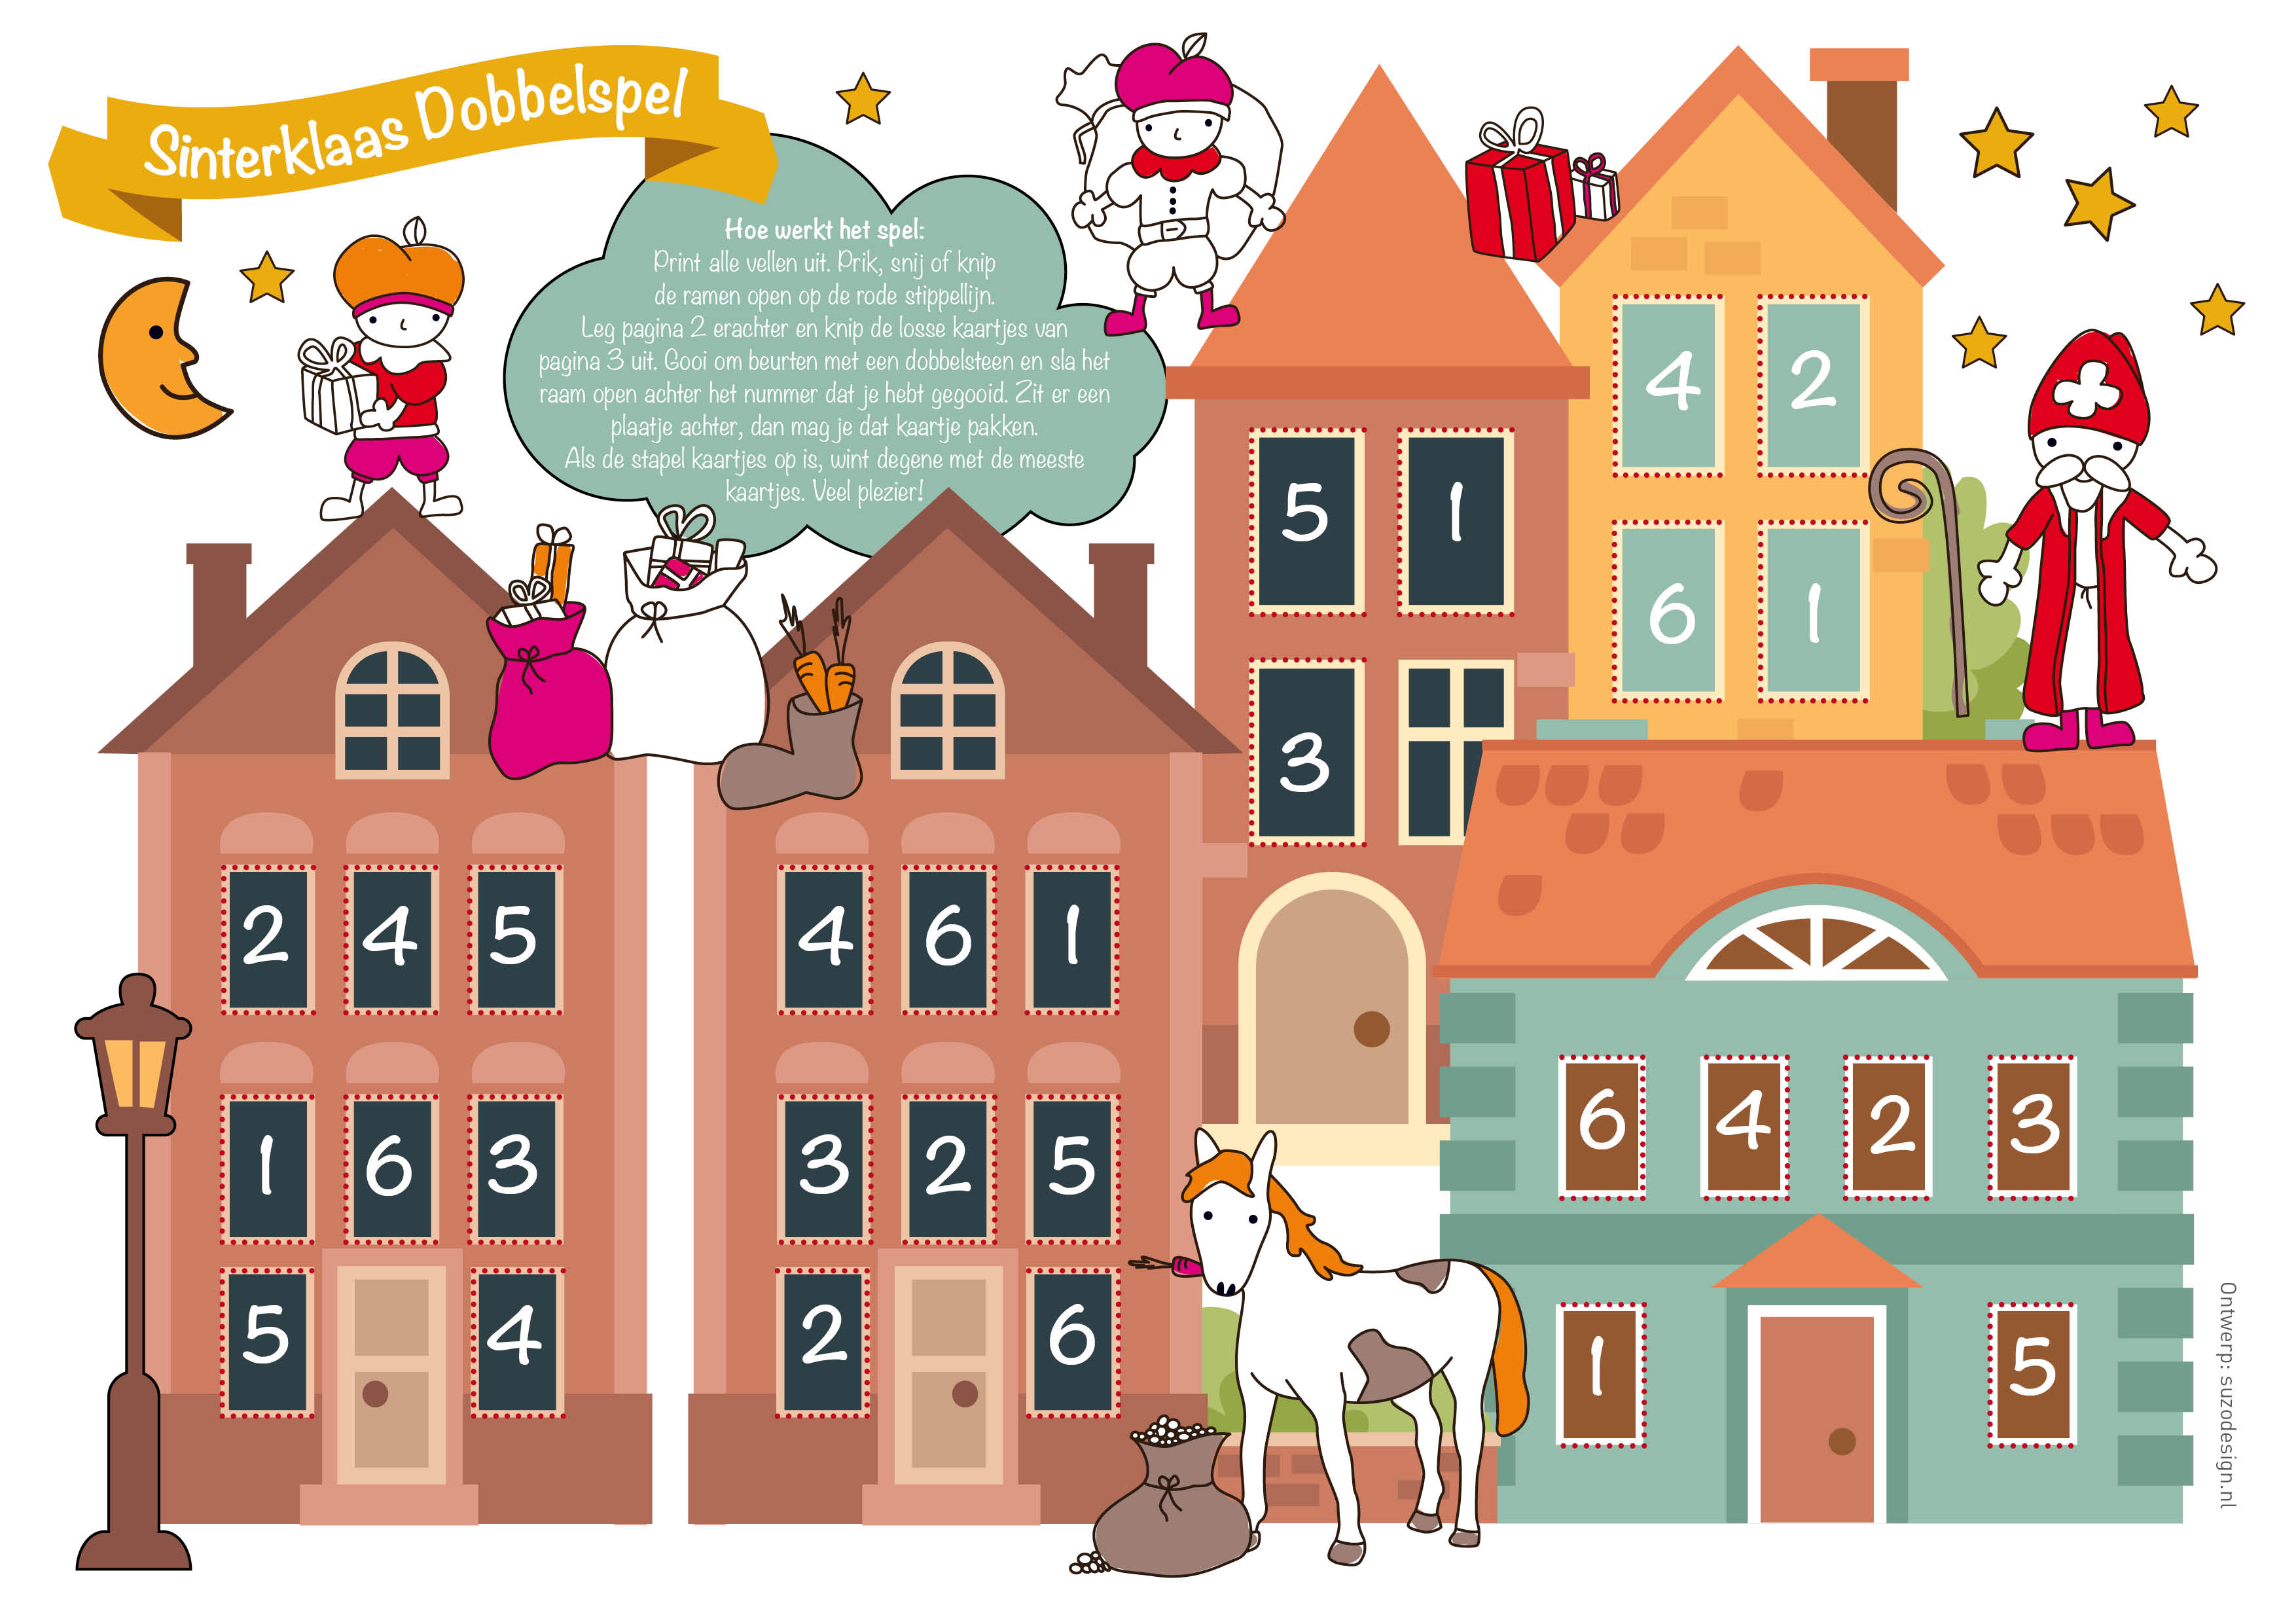 Recensent debat krans Gratis Printable Sinterklaasspel voor kinderen - Hip & Hot - blogazine